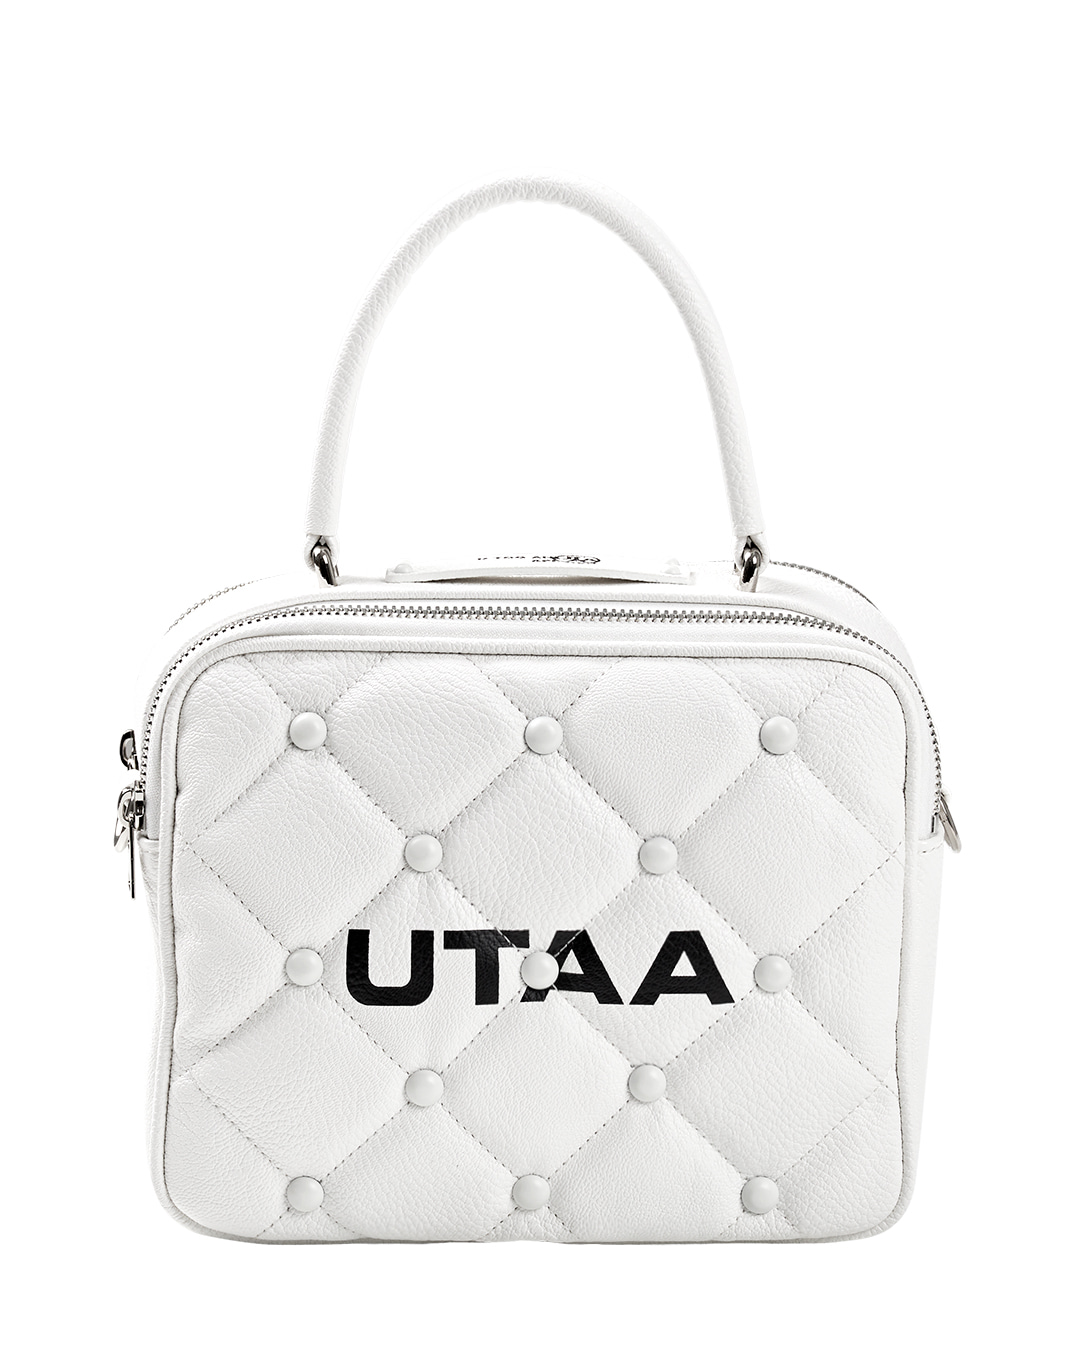 UTAA Quilting Pouch Bag : White (UC0GAU103WH)